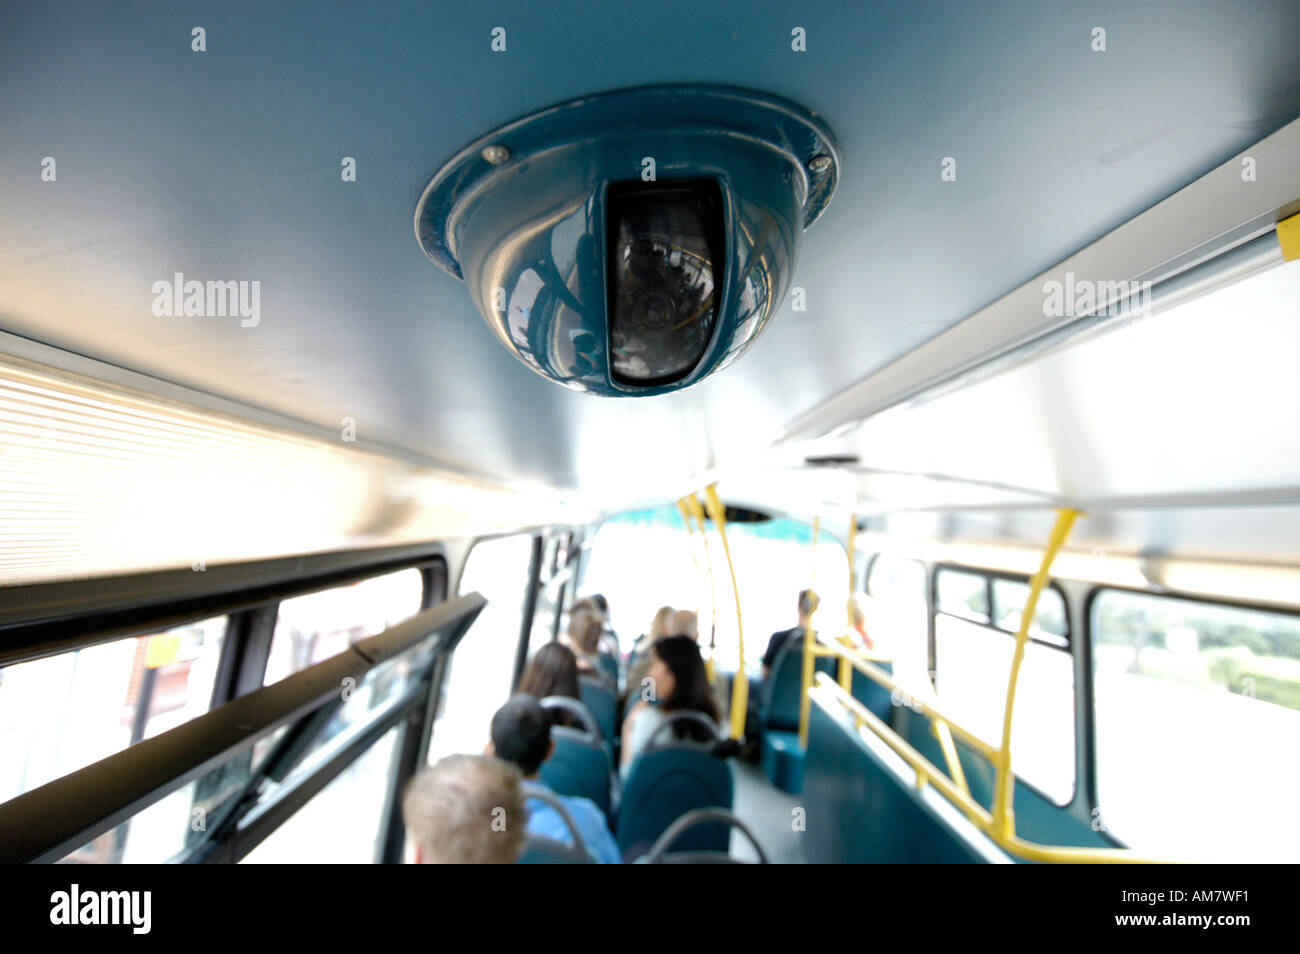 Камеры общественного транспорта. Видеонаблюдение в автобусе. Система видеонаблюдения в автобусе. Видеокамера в автобусе. Камеры наблюдения в автобусе.